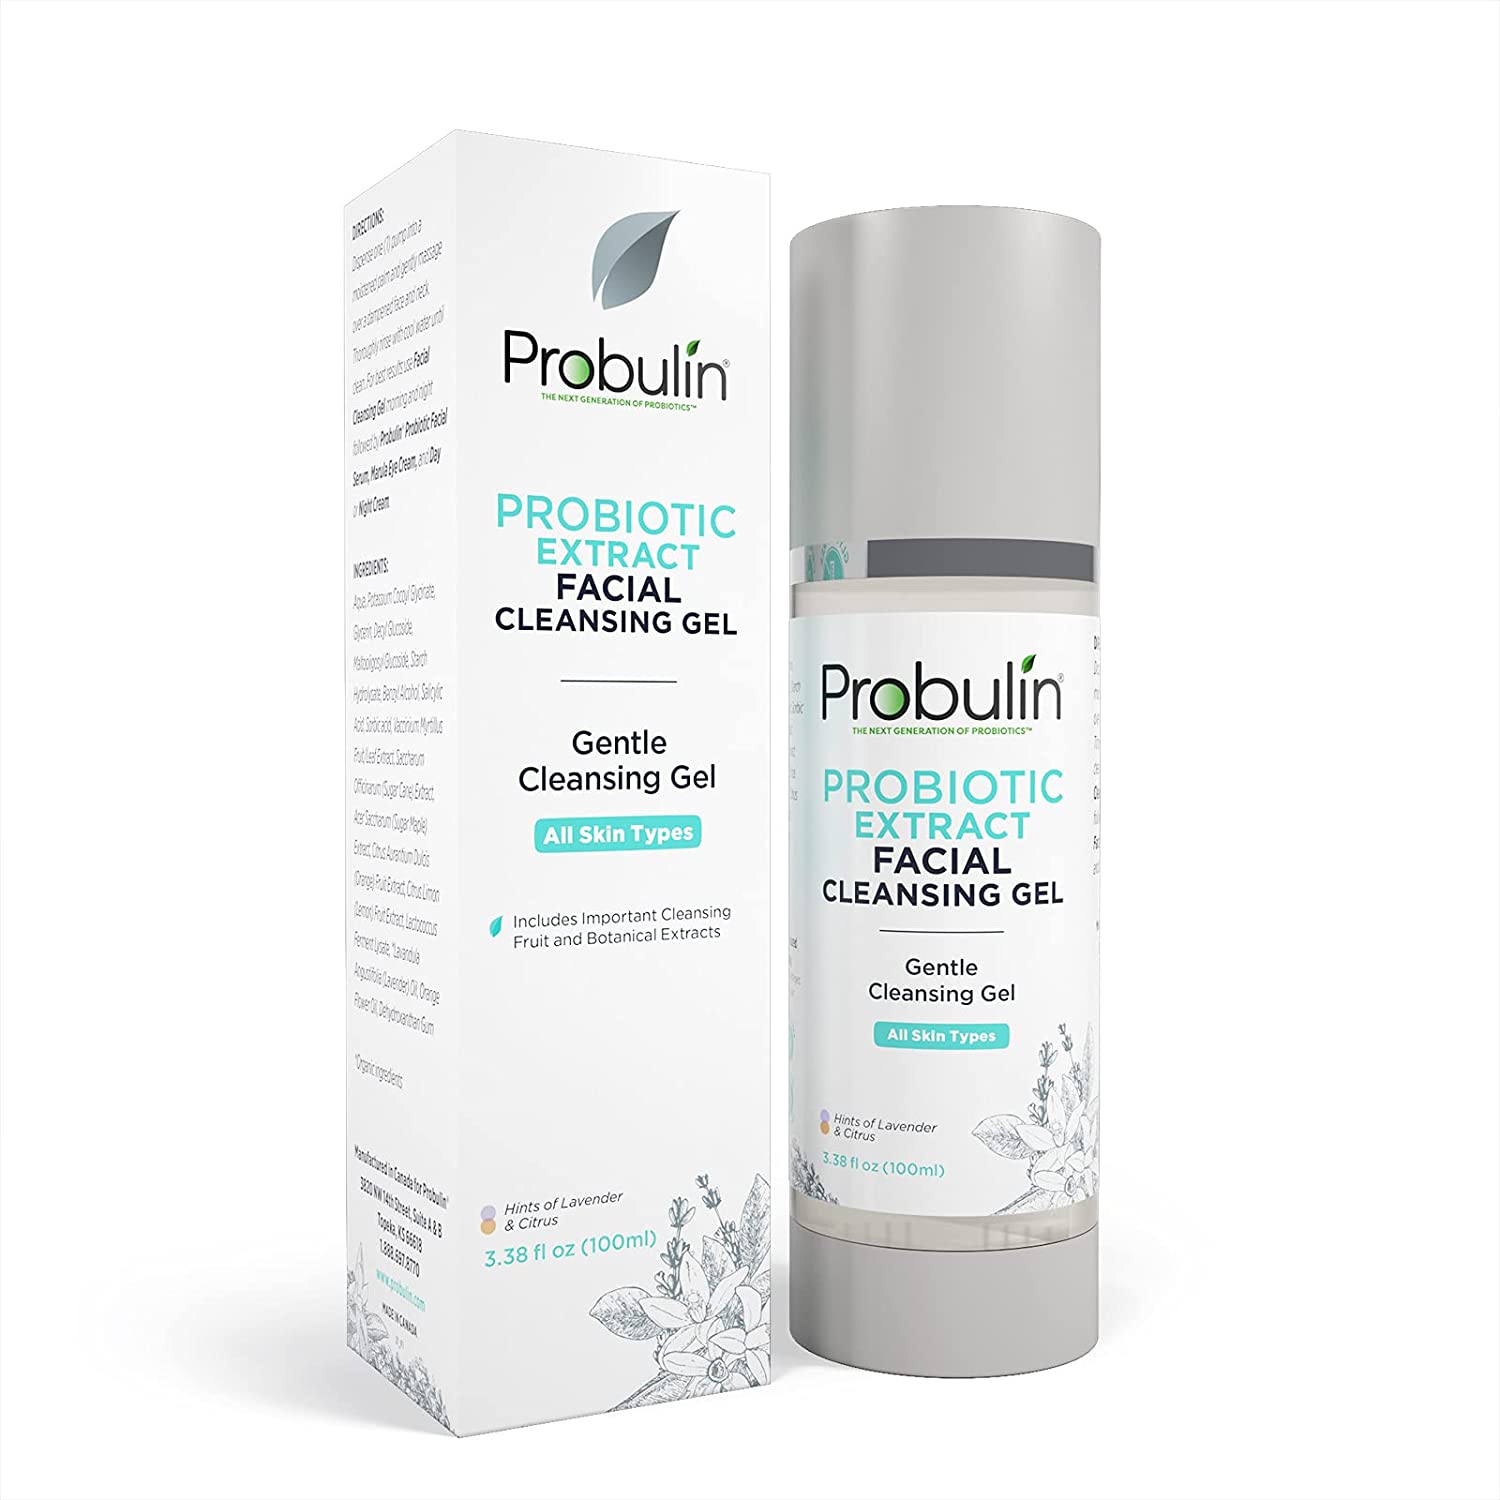 Probulin Probiotic Facial Cleansing Gel 100ml